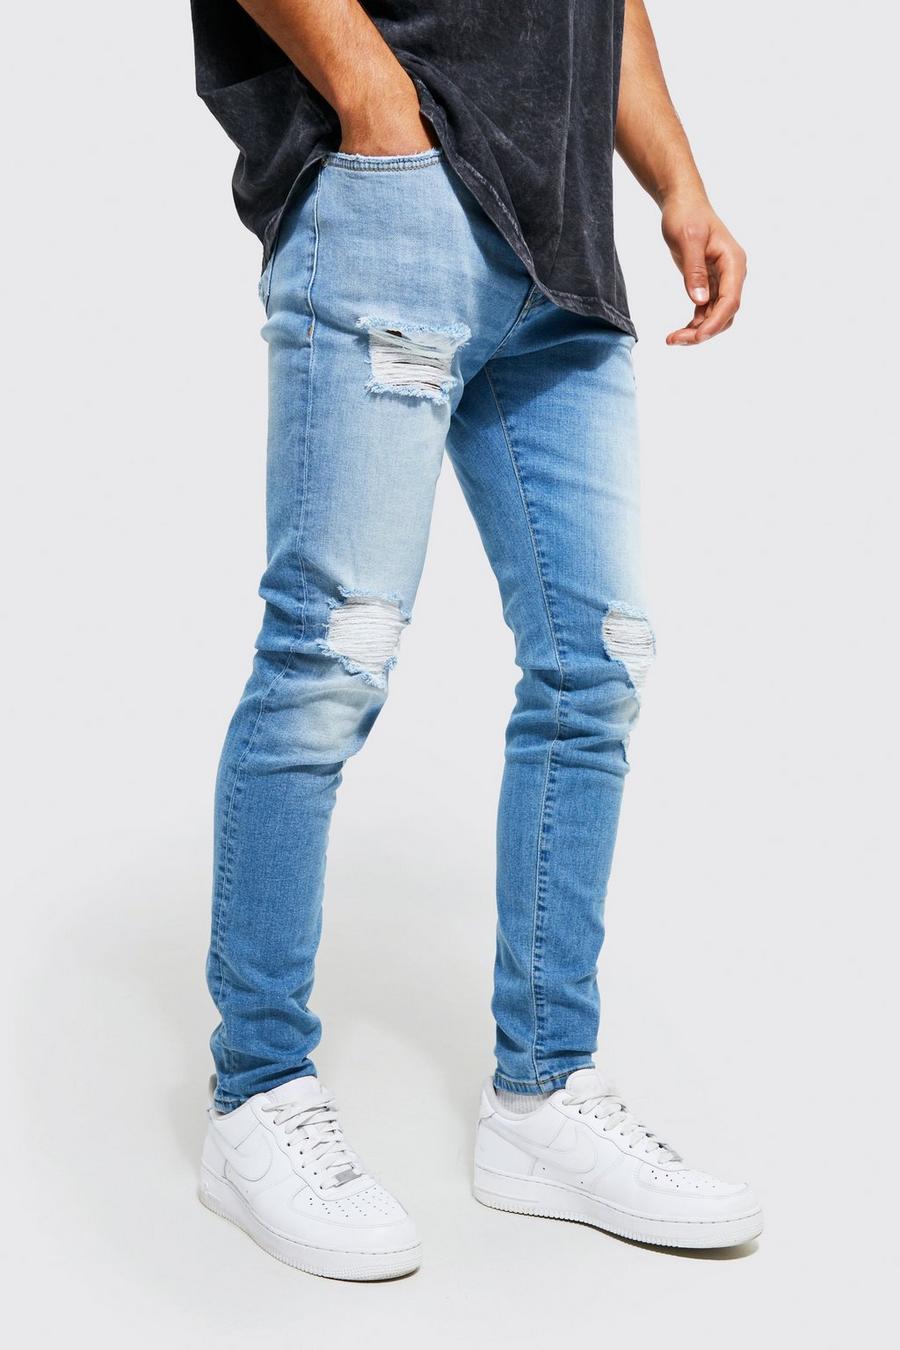 כחול בהיר azzurro סקיני ג'ינס נמתח עם בד משופשף בברכיים